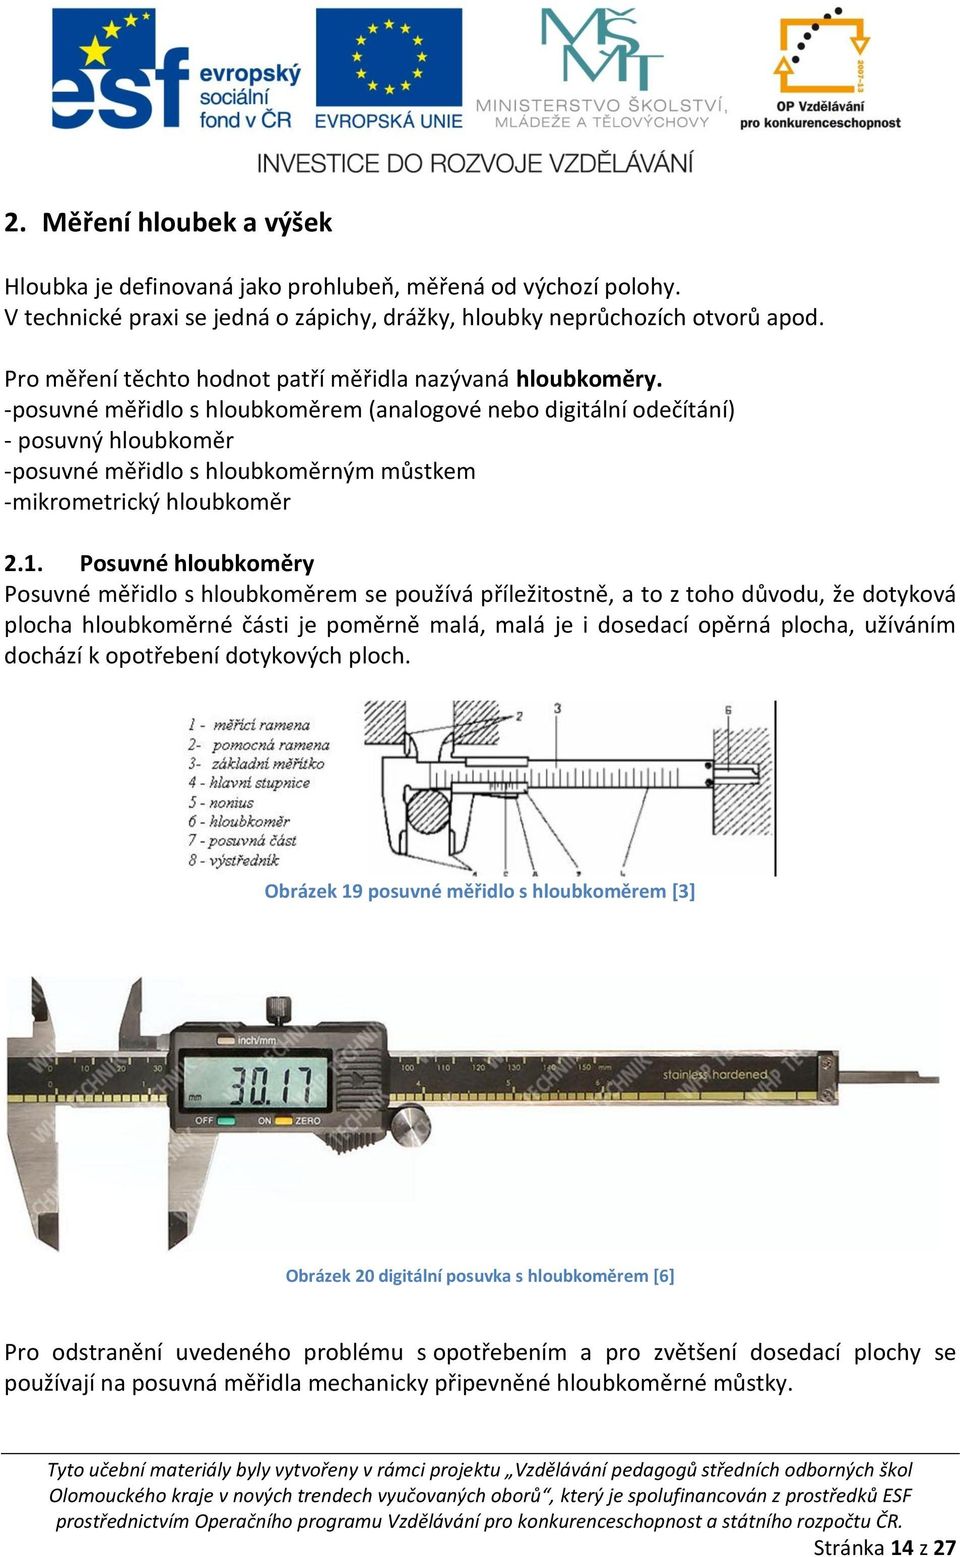 -posuvné měřidlo s hloubkoměrem (analogové nebo digitální odečítání) - posuvný hloubkoměr -posuvné měřidlo s hloubkoměrným můstkem -mikrometrický hloubkoměr 2.1.